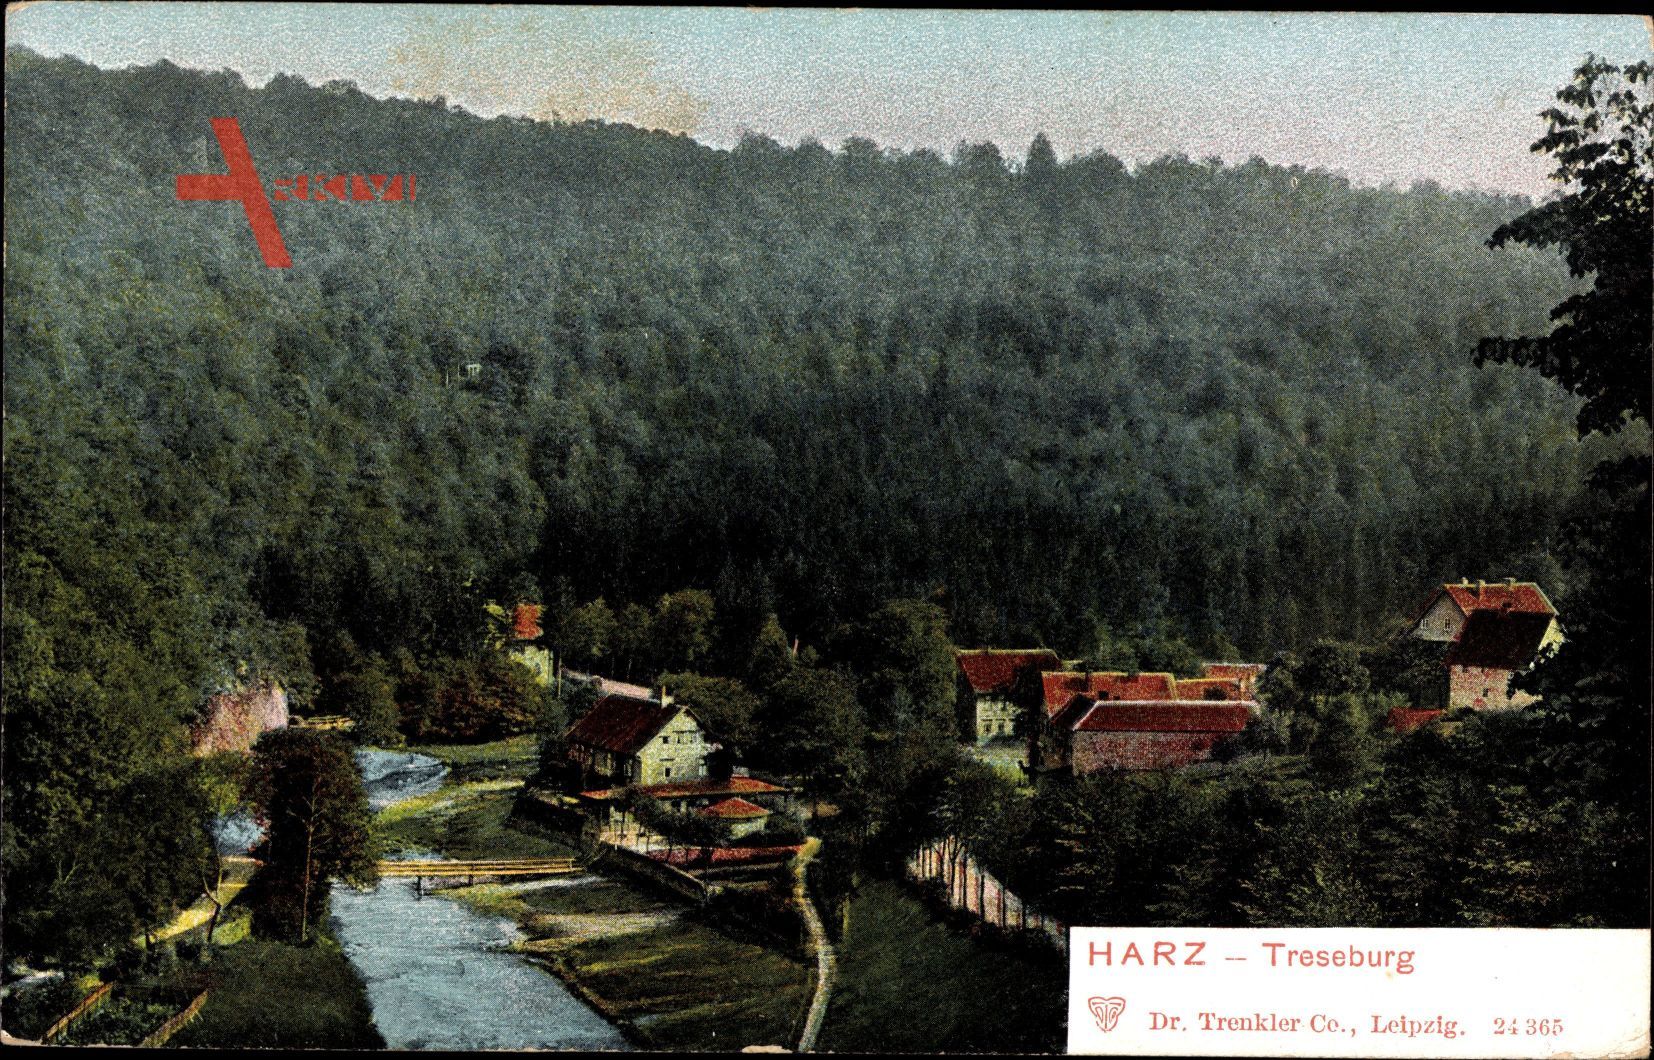 Treseburg Thale im Harz, Blick auf den Ort, Wald, Fluss, Brücke, Häuser